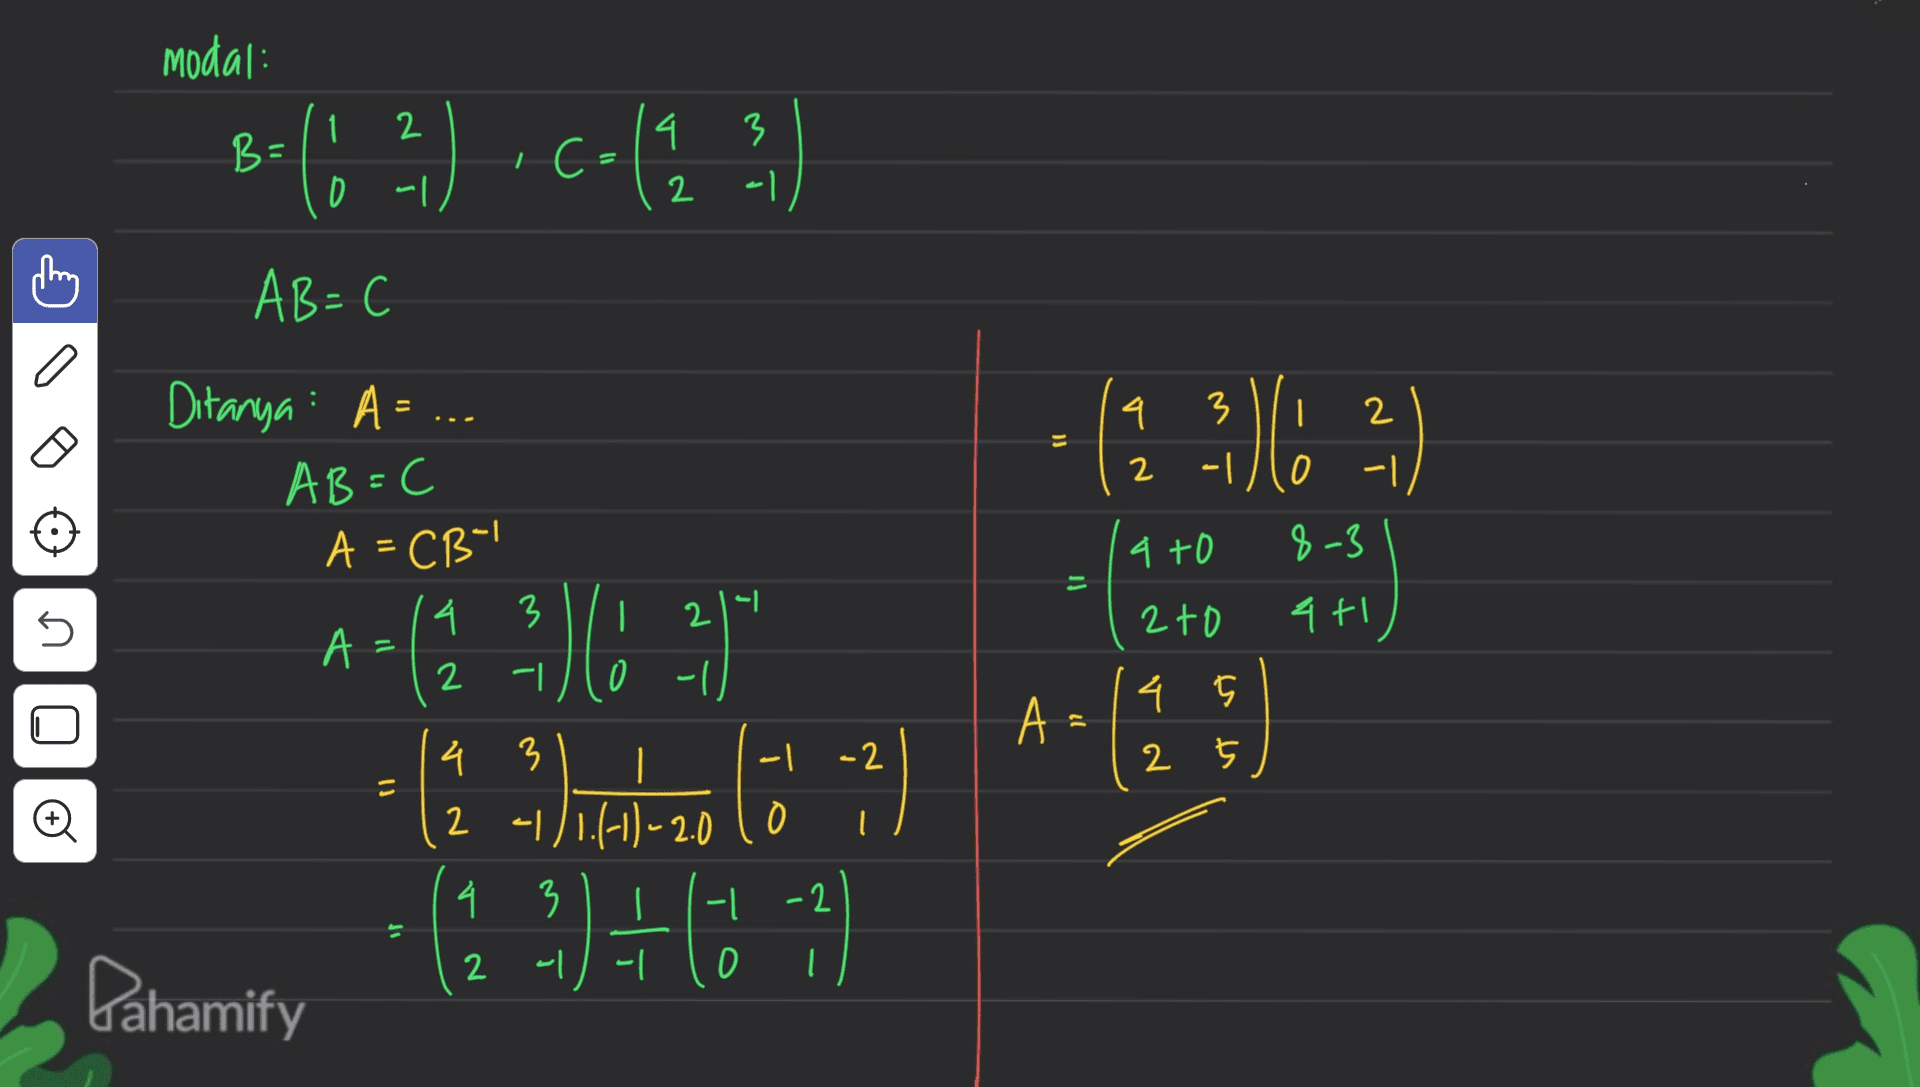 modal: = 8-(12) C-(13) : 4 2 0 네 이 AB=C 이 Ditanya: A = ... (13) ) | 2 -1 AB=C AC3 4 +O 8-3 il 3 U | 211 2+ 커 A - 4 2 0ㅔ A 11 45 2 5 -2 AA l 2.2) (1 (1) 4 3 || 니 2 1/1.(-11-2010 4 3 1 -l -2 2 니 니 0 l 이 Pahamify 